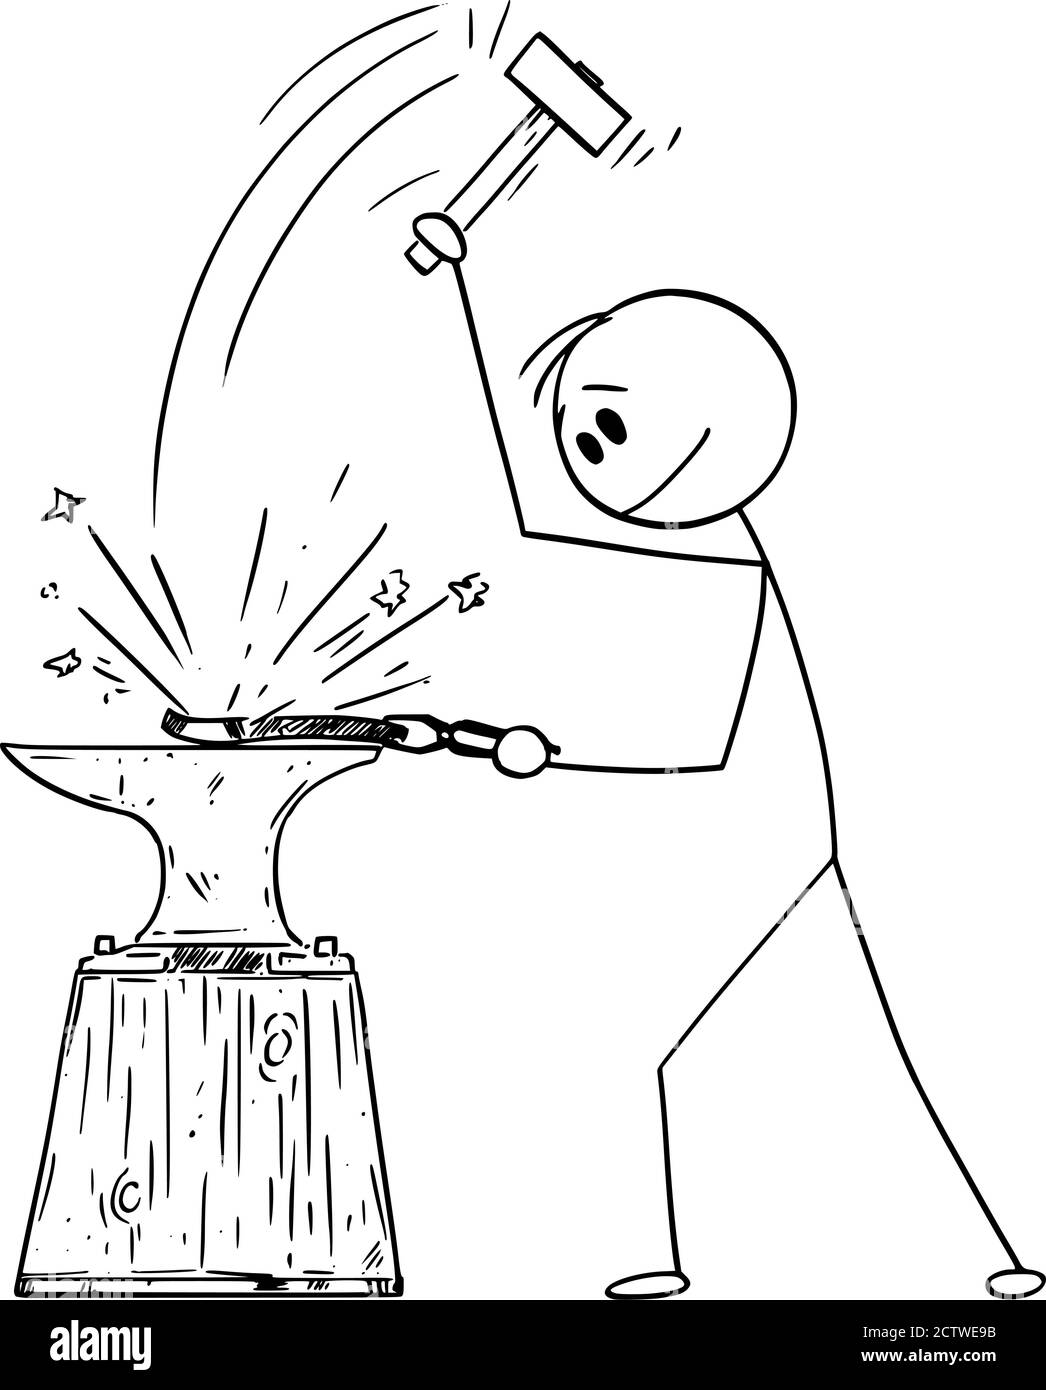 Vektor Cartoon Stick Figur Zeichnung konzeptionelle Illustration von Schmied oder schmied arbeiten bei Schmiede mit Hammer, Hämmern Stück heißes Metall in Amboss. Stock Vektor